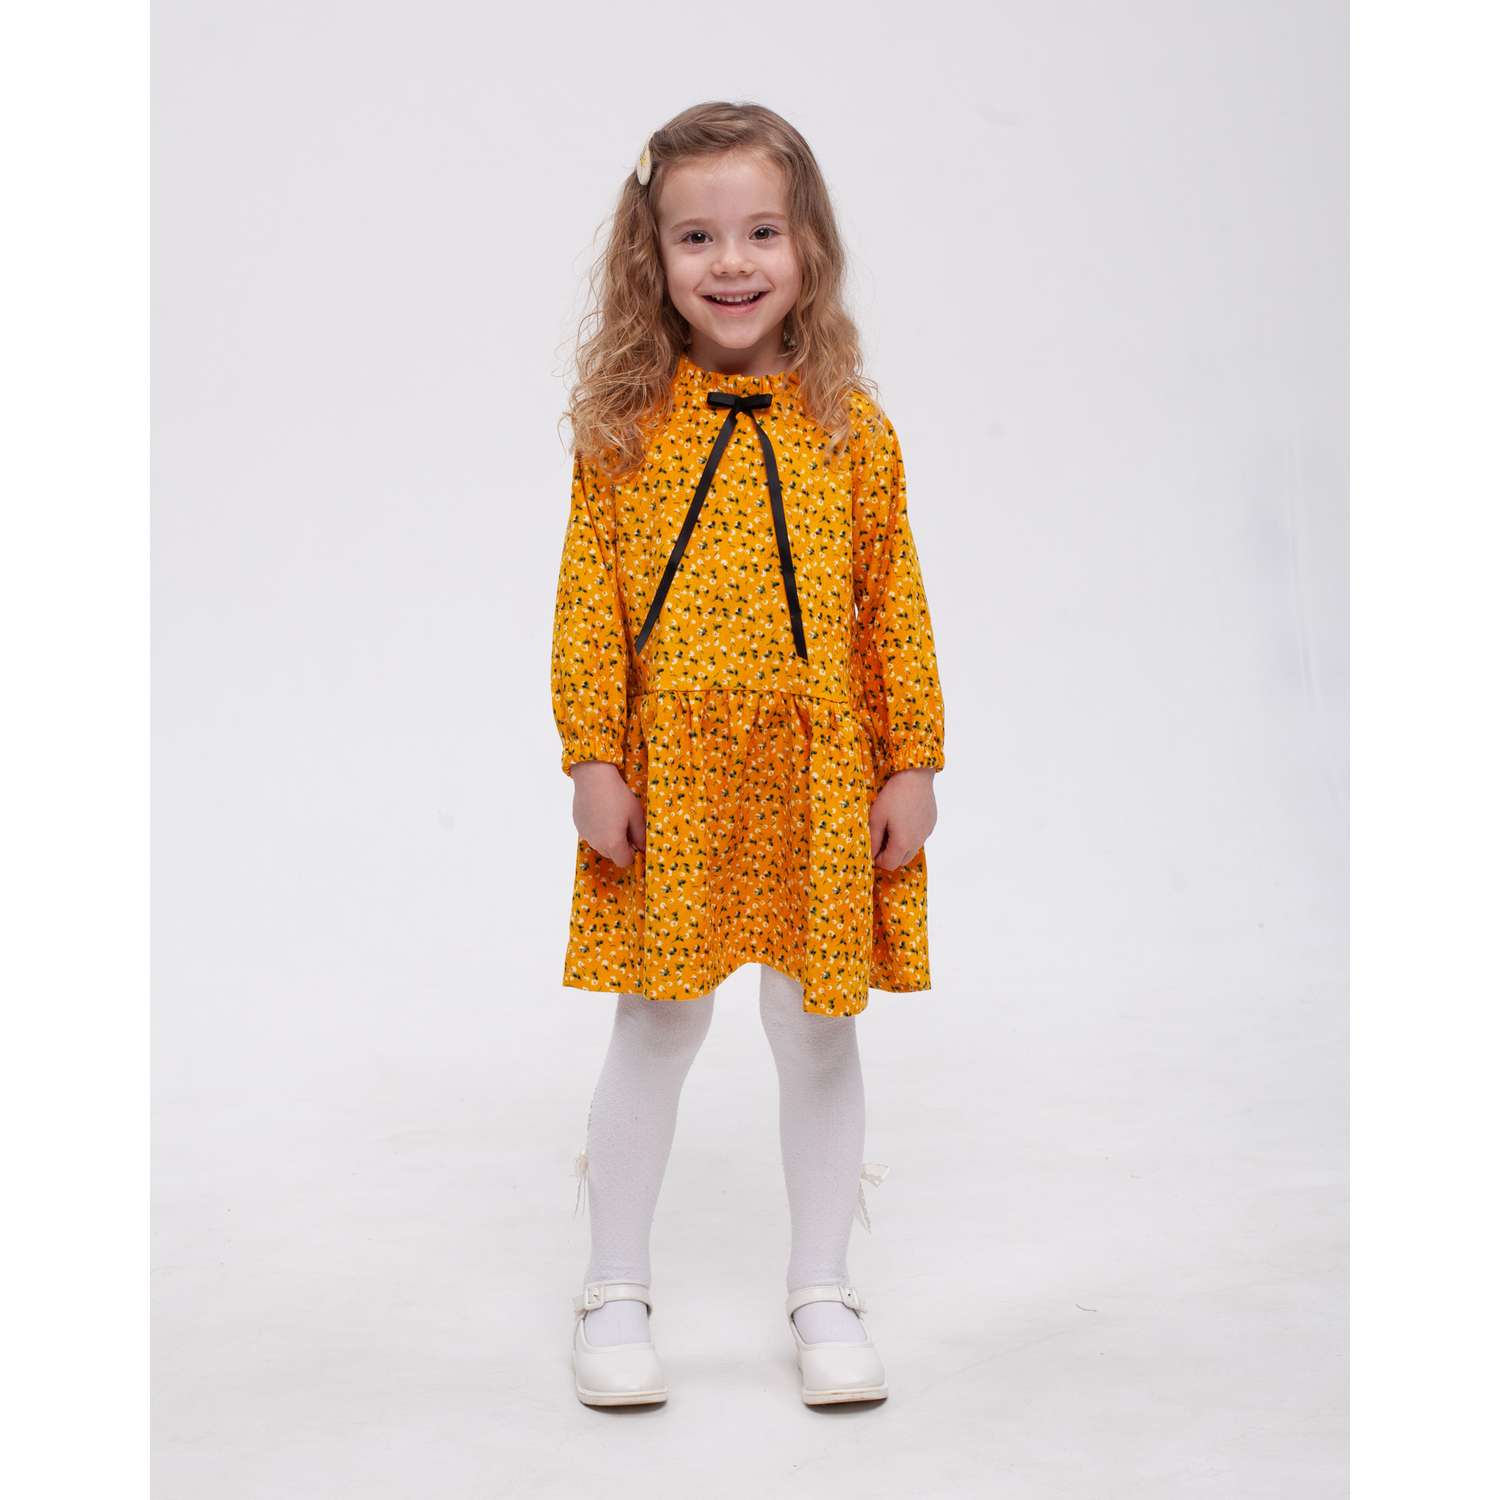 Платье CHILDREAM платье желтое - фото 1